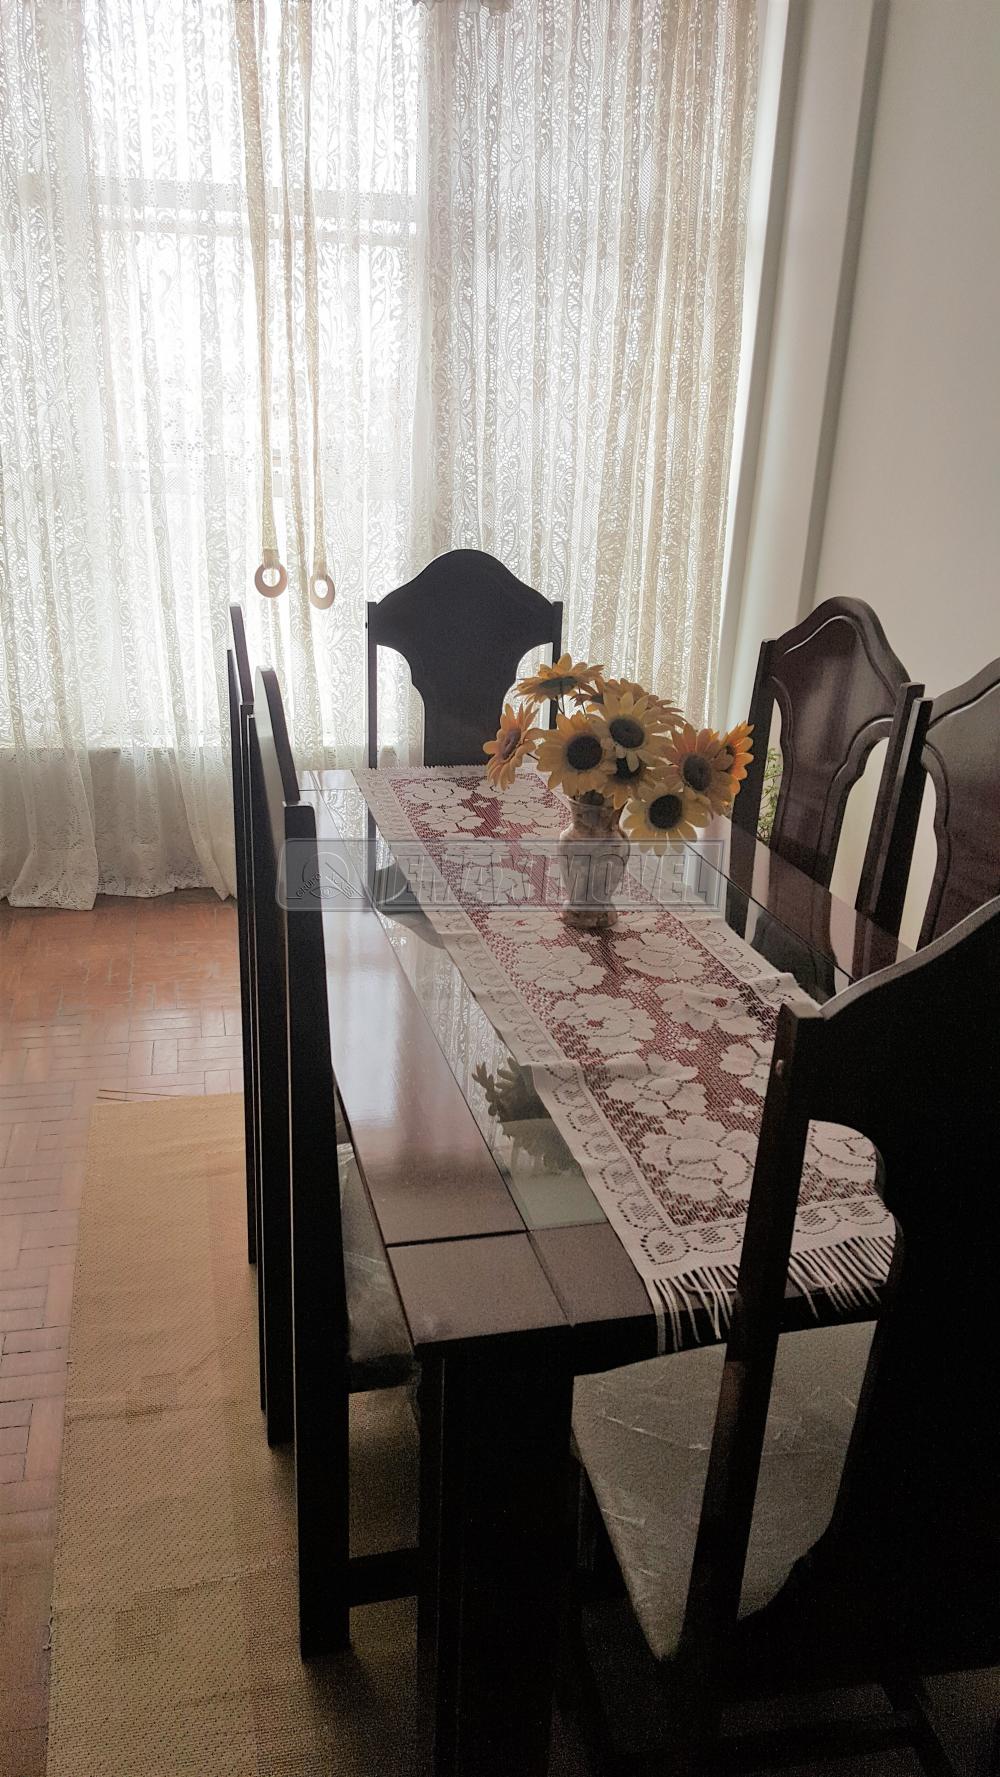 Comprar Apartamento / Padrão em Sorocaba R$ 250.000,00 - Foto 4